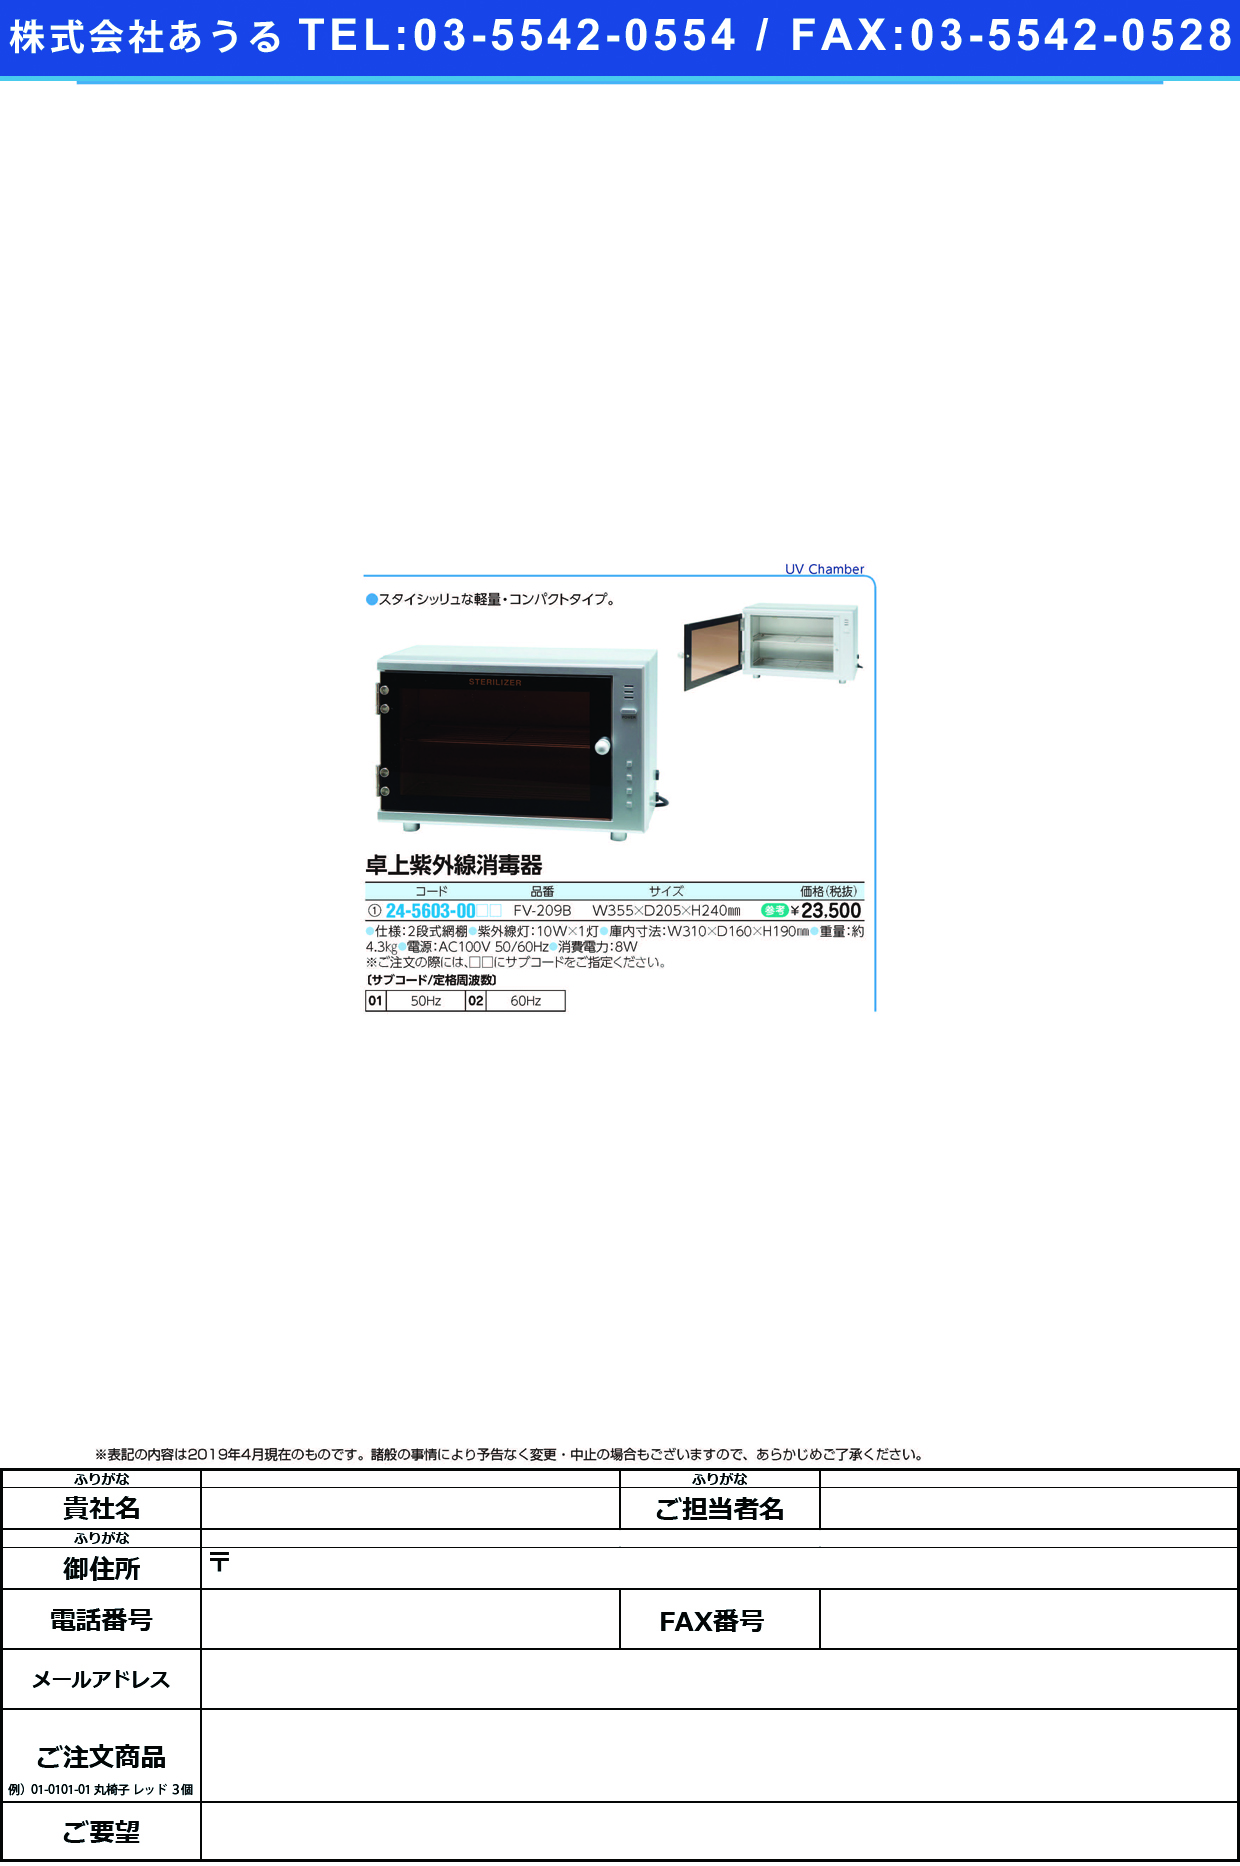 (24-5603-00)卓上紫外線消毒器 FV-209B ﾀｸｼﾞｮｳｼｶﾞｲｾﾝｼｮｳﾄﾞｸｷ ６０Ｈｚ【1台単位】【2019年カタログ商品】